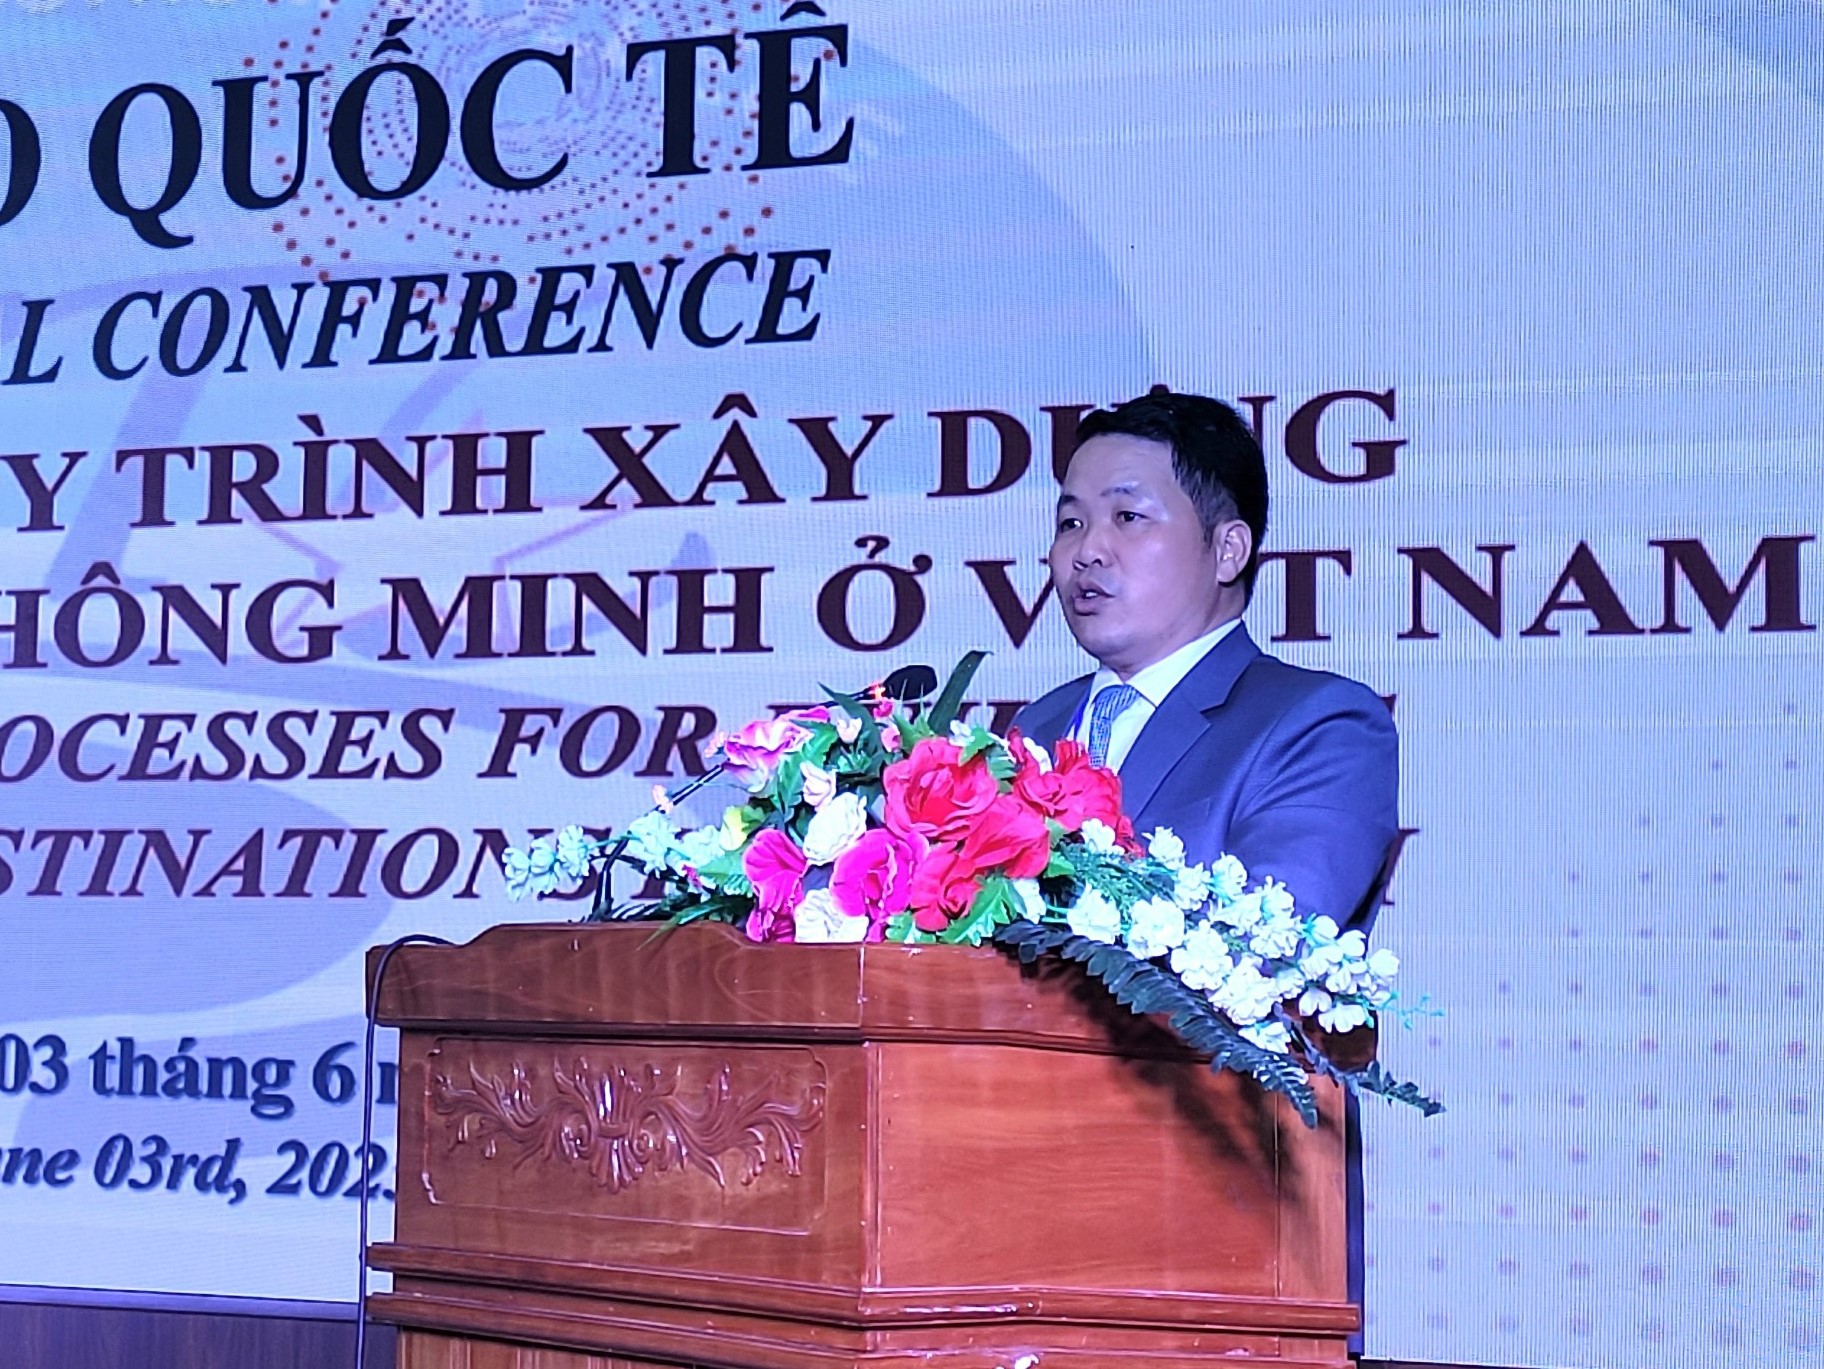 อาจารย์ Nguyen Doan Thanh - อธิการบดีวิทยาลัยการท่องเที่ยวญาจางกล่าวเปิดการสัมมนา